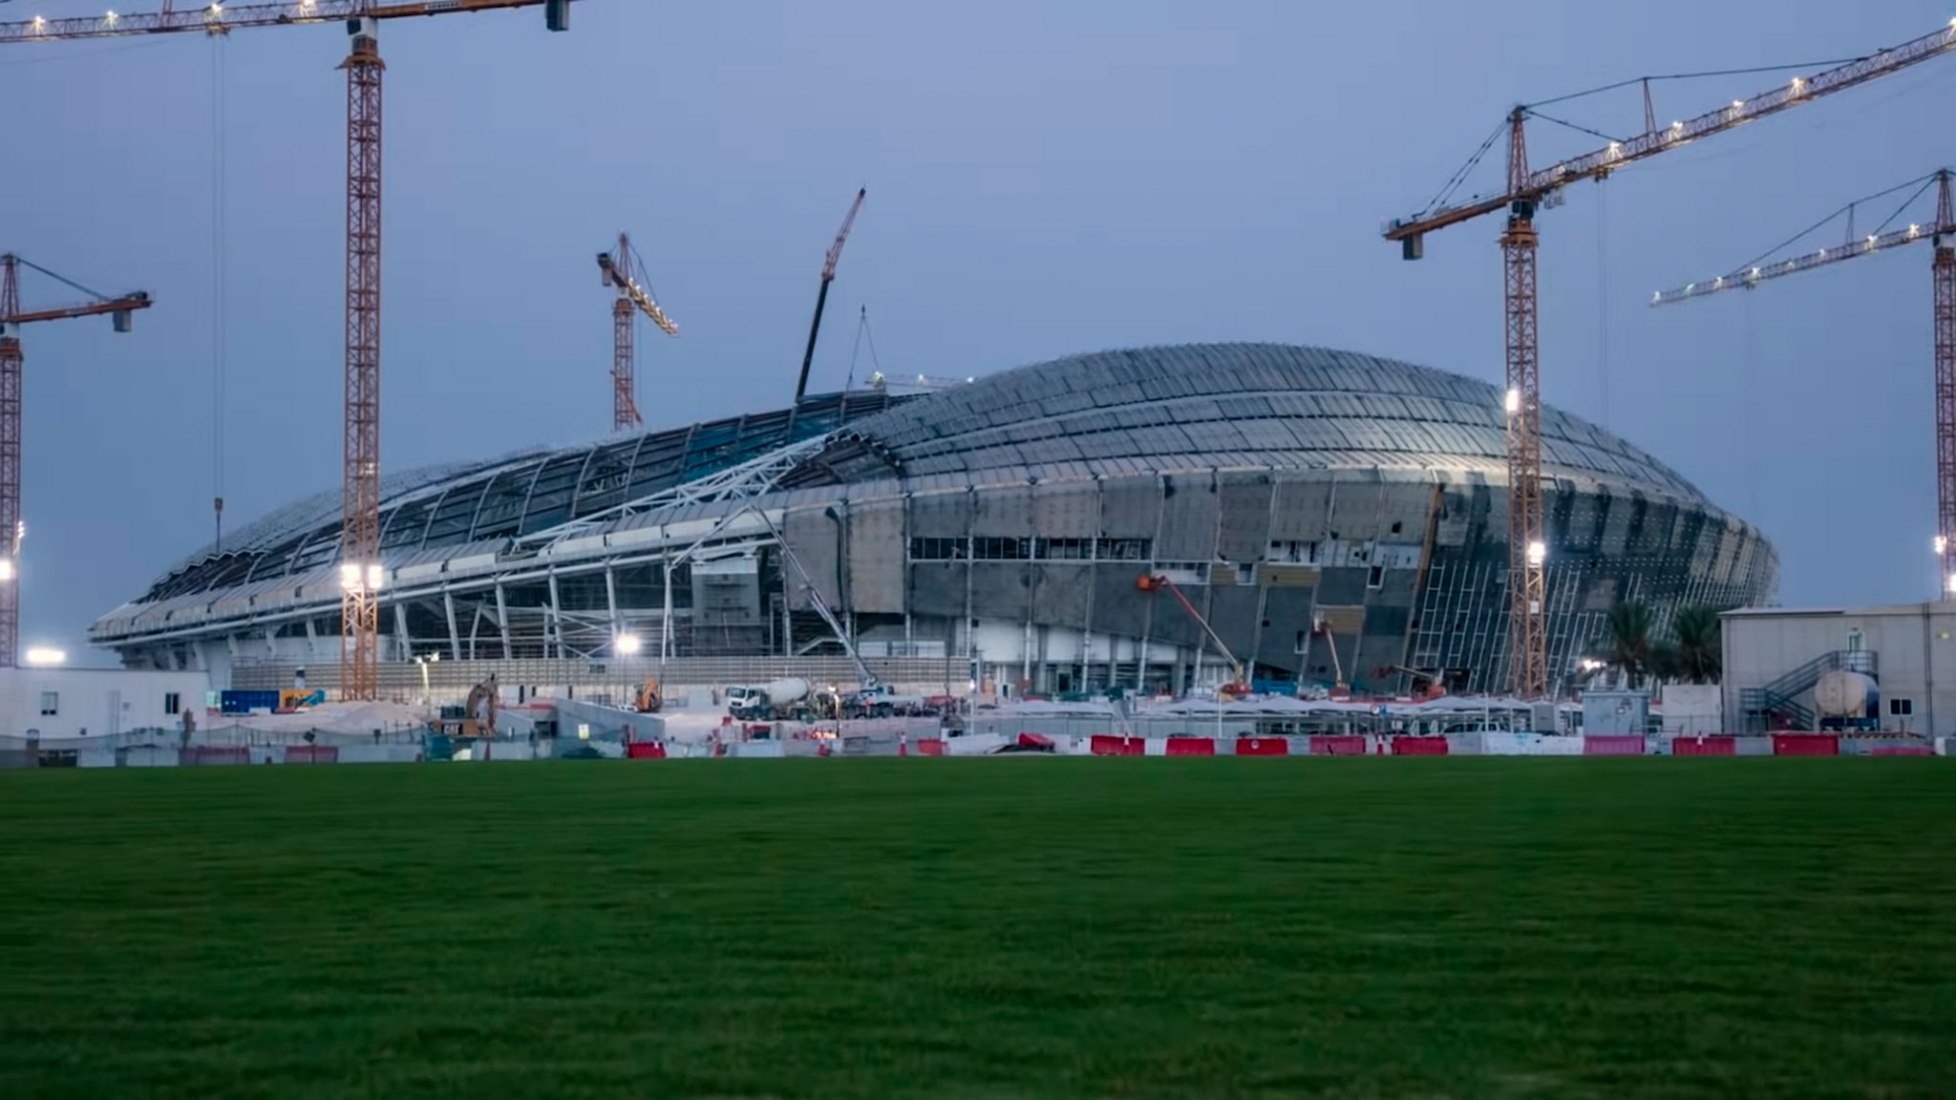 Progreso del estadio Al Wakrah - octubre de 2018. Video a través de Road to 2022 en YouTube.